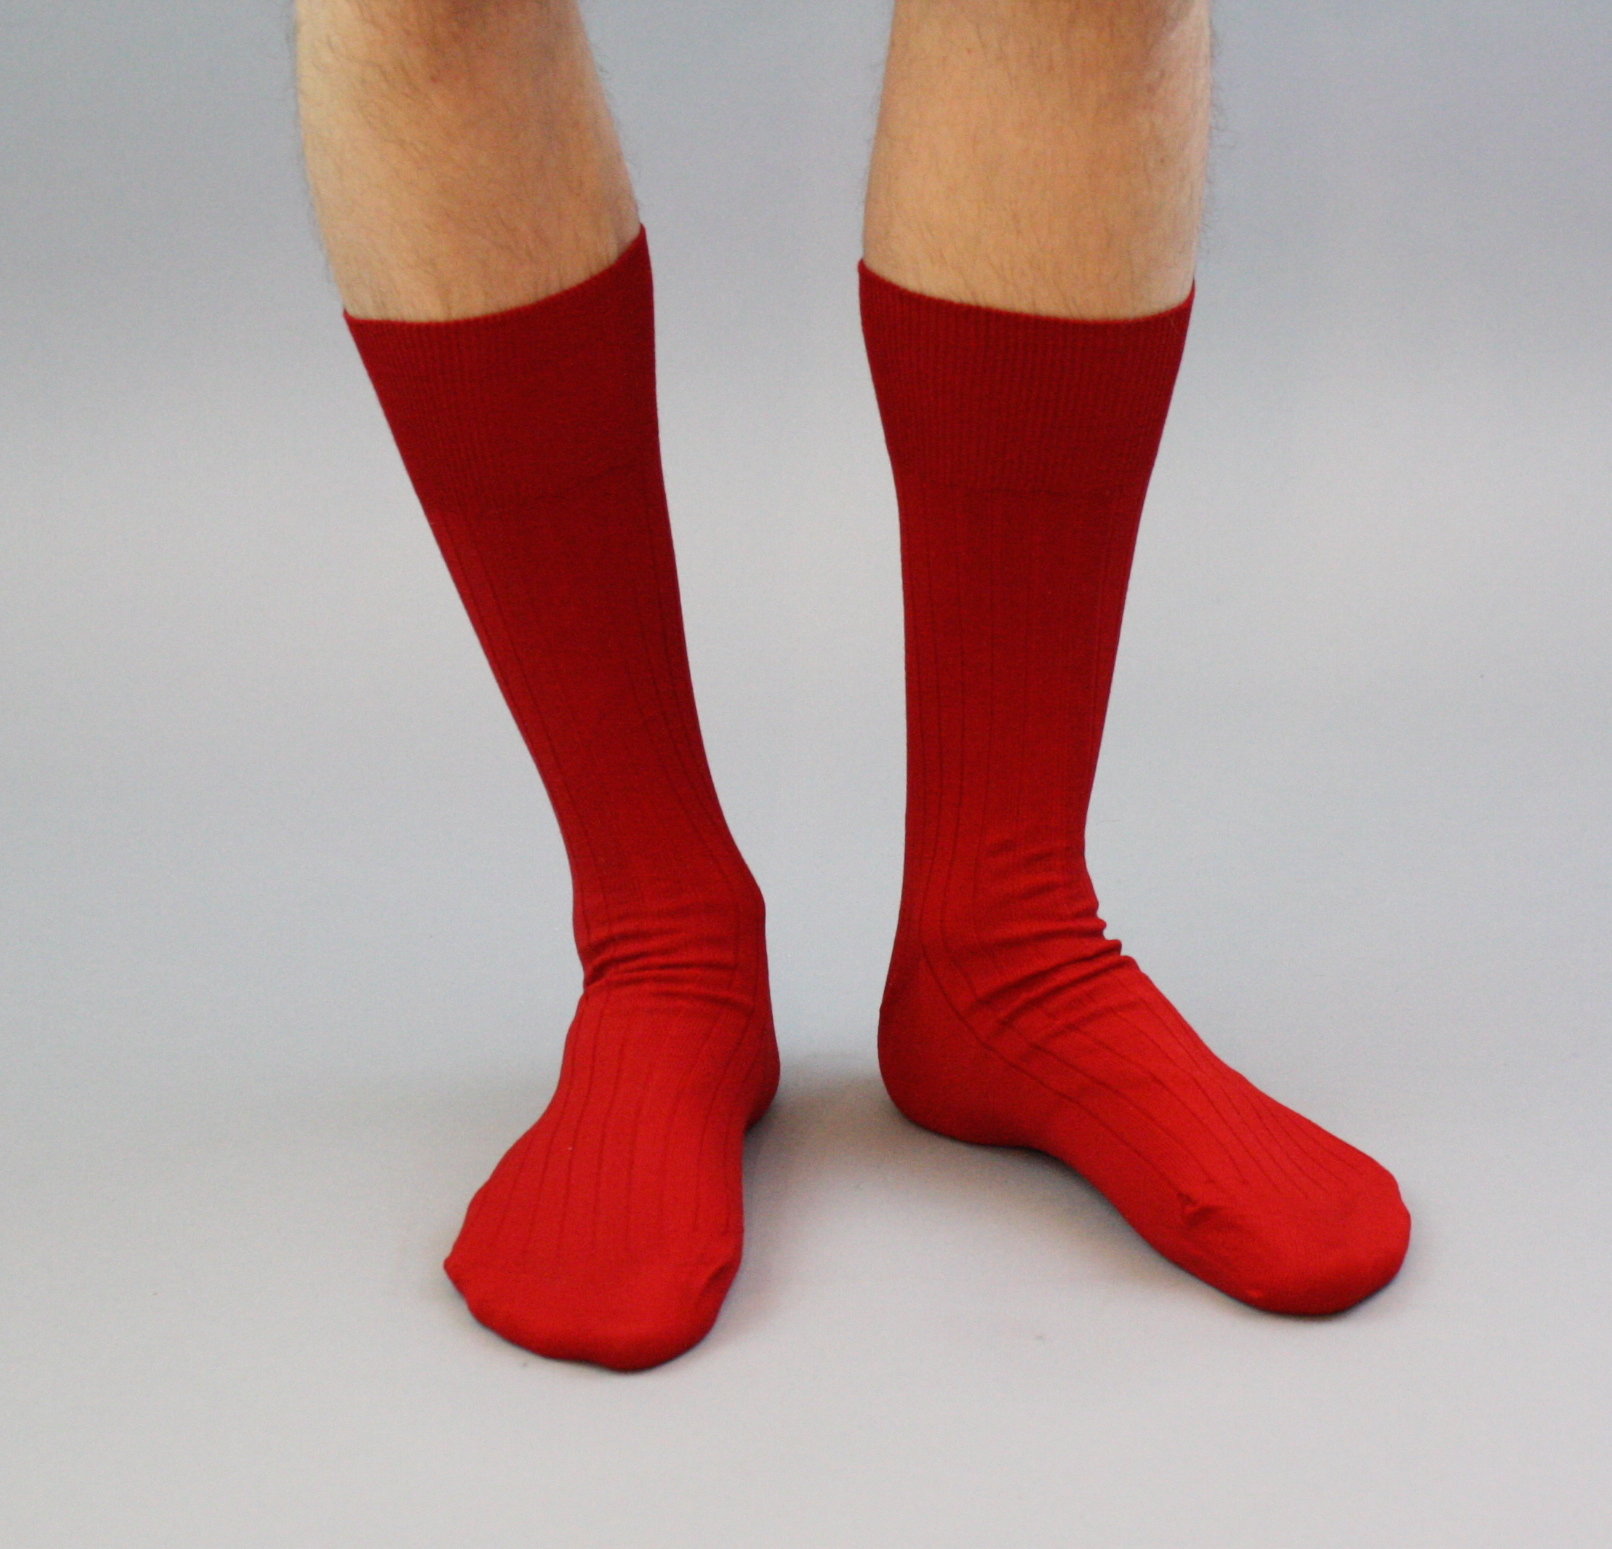 popular socks for guys